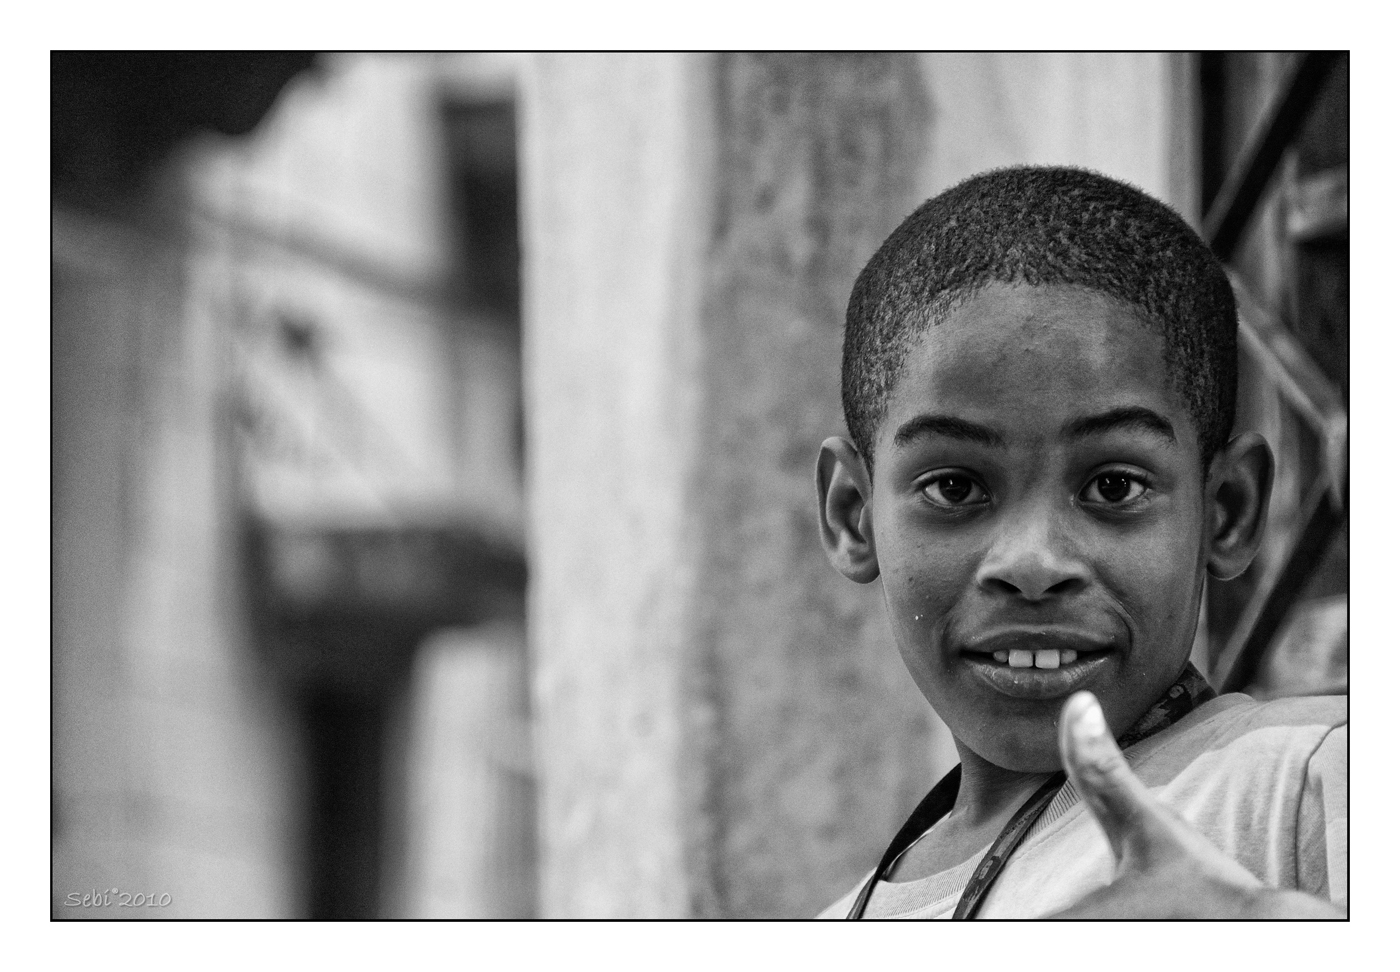 Cuba en blanco y negro - rid - 087.jpg